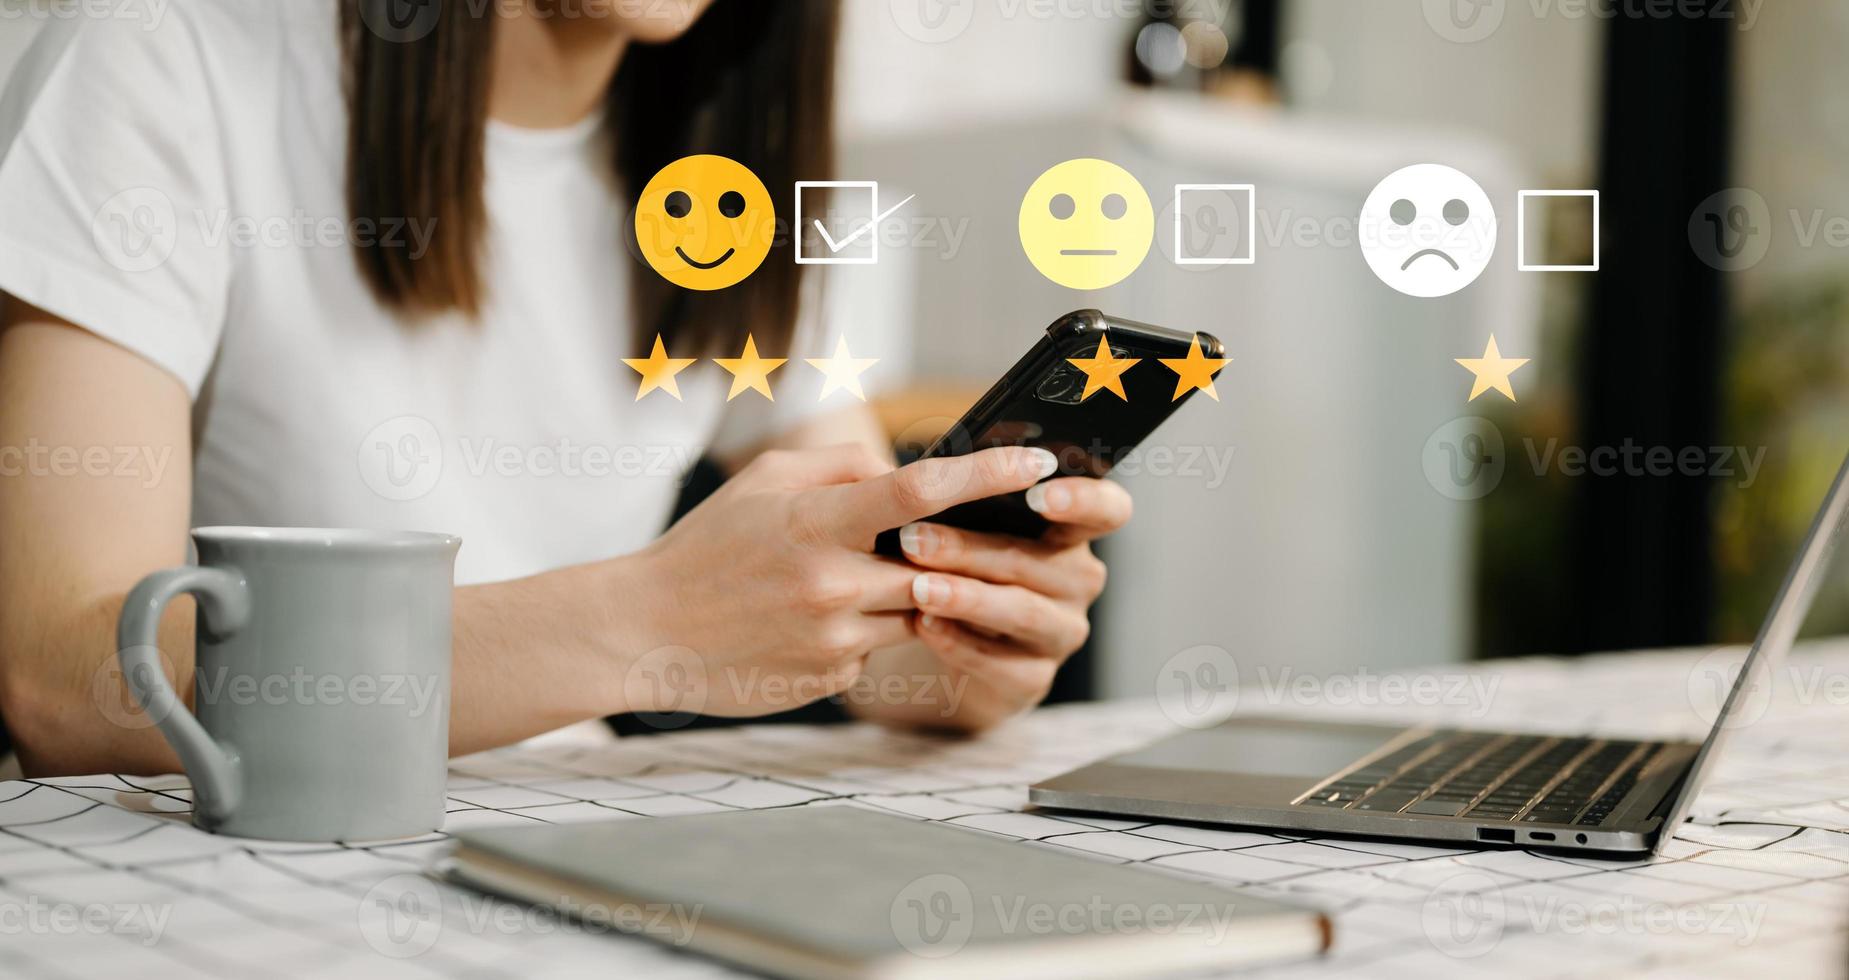 kund service utvärdering begrepp. affärskvinna brådskande ansikte leende uttryckssymbol visa på virtuell skärm på läsplatta och smartphone i kontor foto